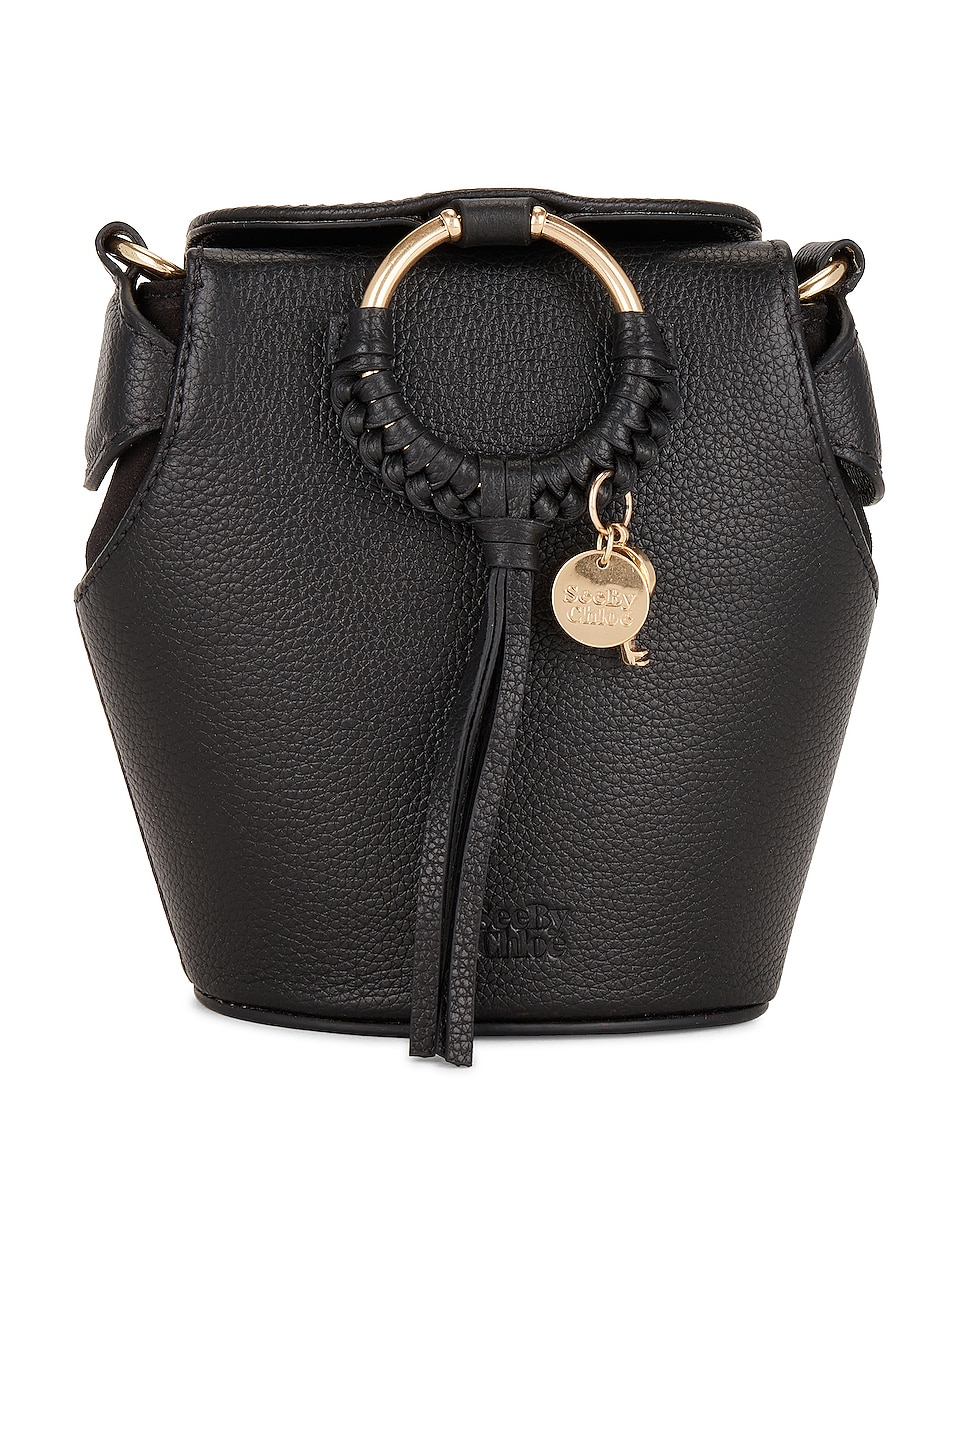 Joan Box Bag in Black 